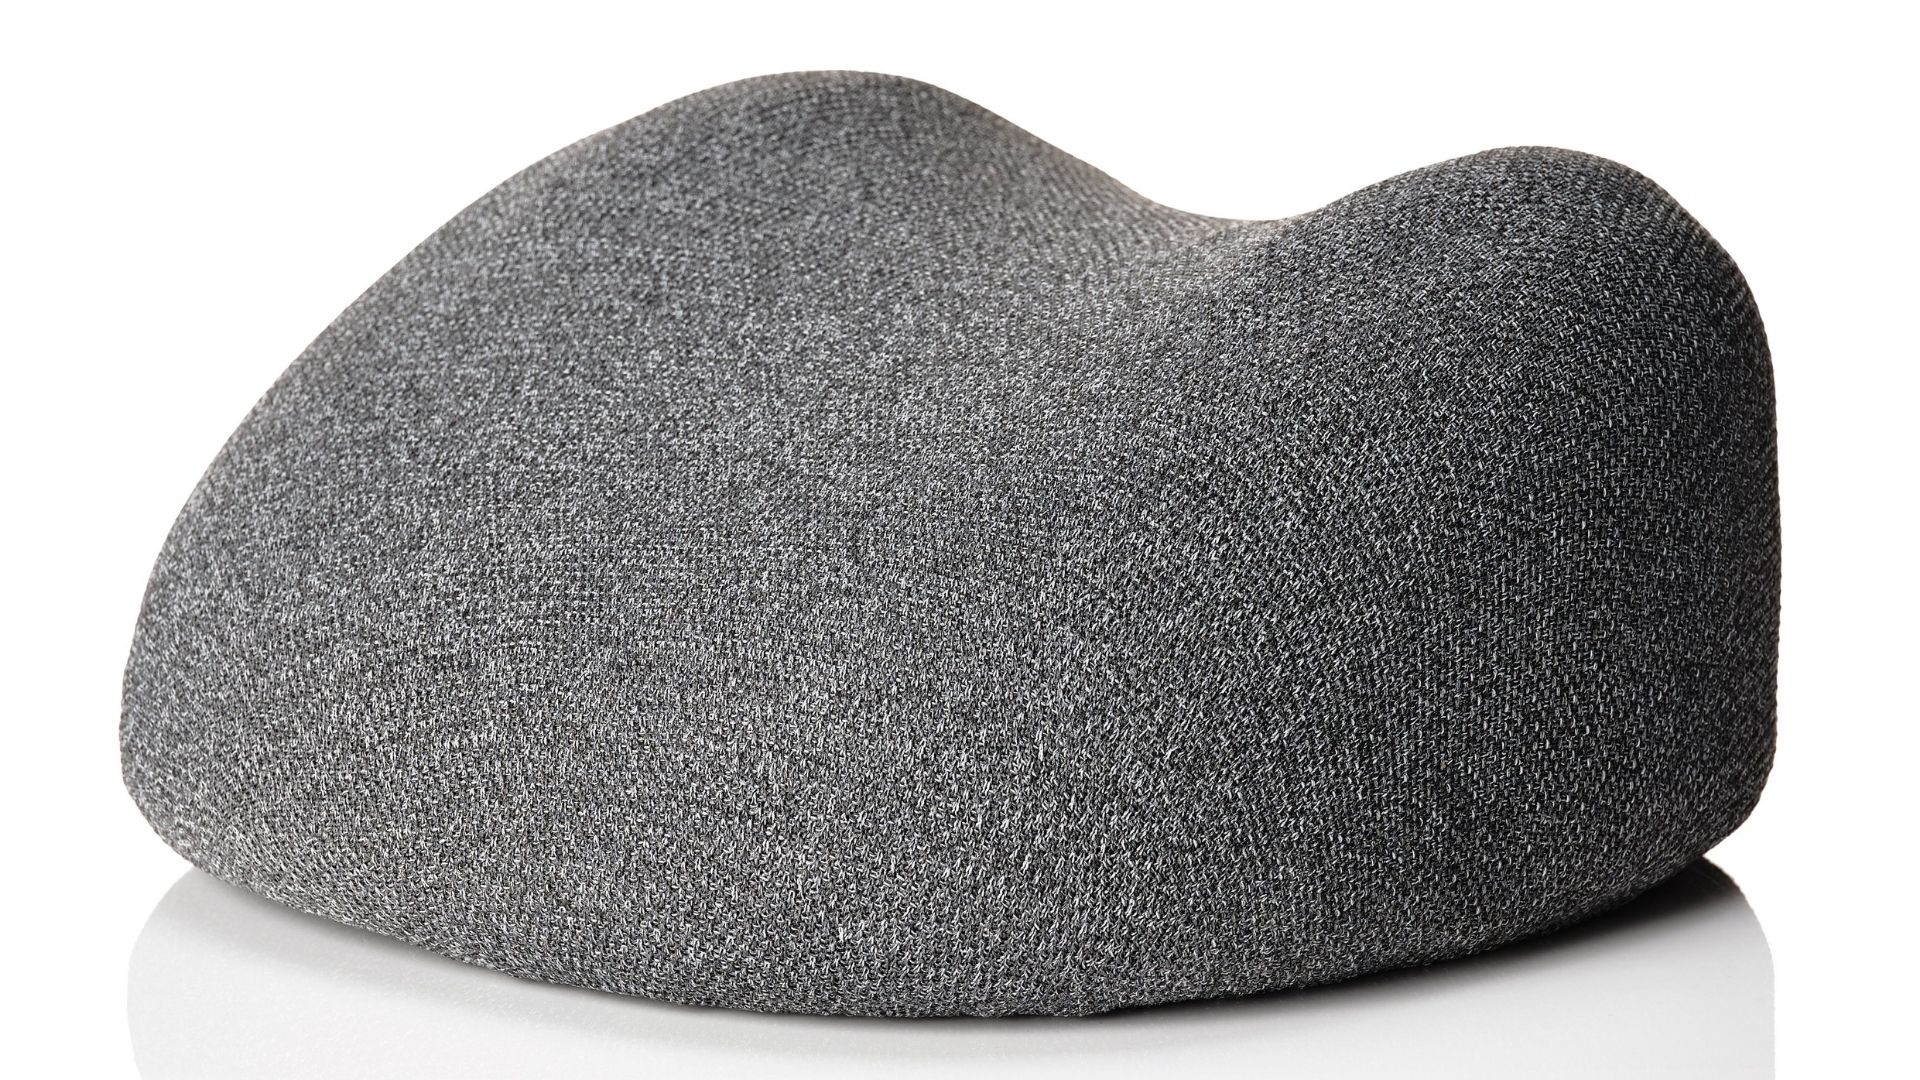 Soft Stone by Claesson Koivisto Rune